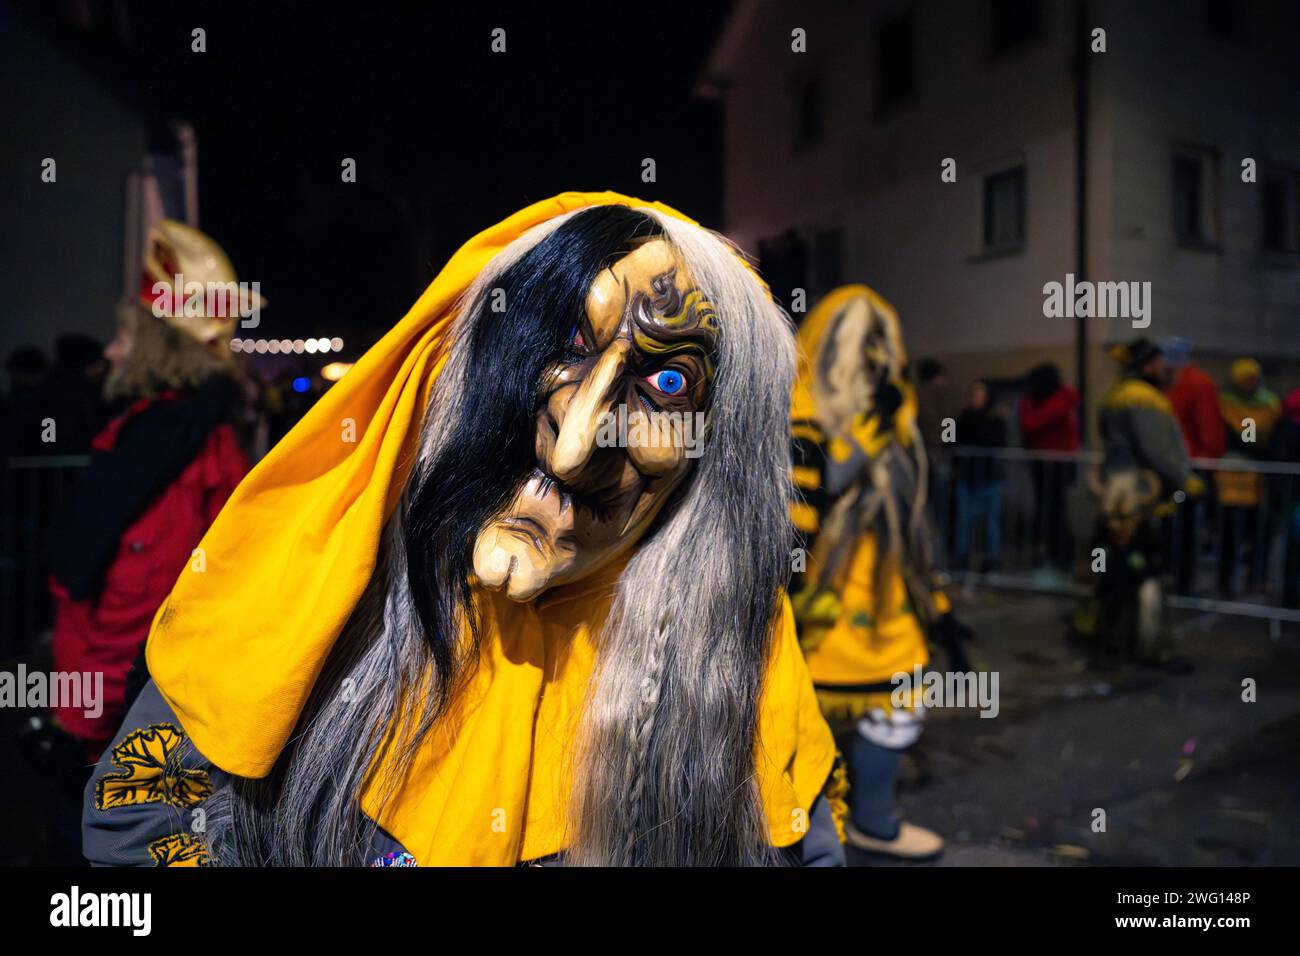 Persona con maschera dettagliata e mantello giallo di notte, carnevale, sfilata notturna di Schellbronn, Schellbronn, Germania Foto Stock